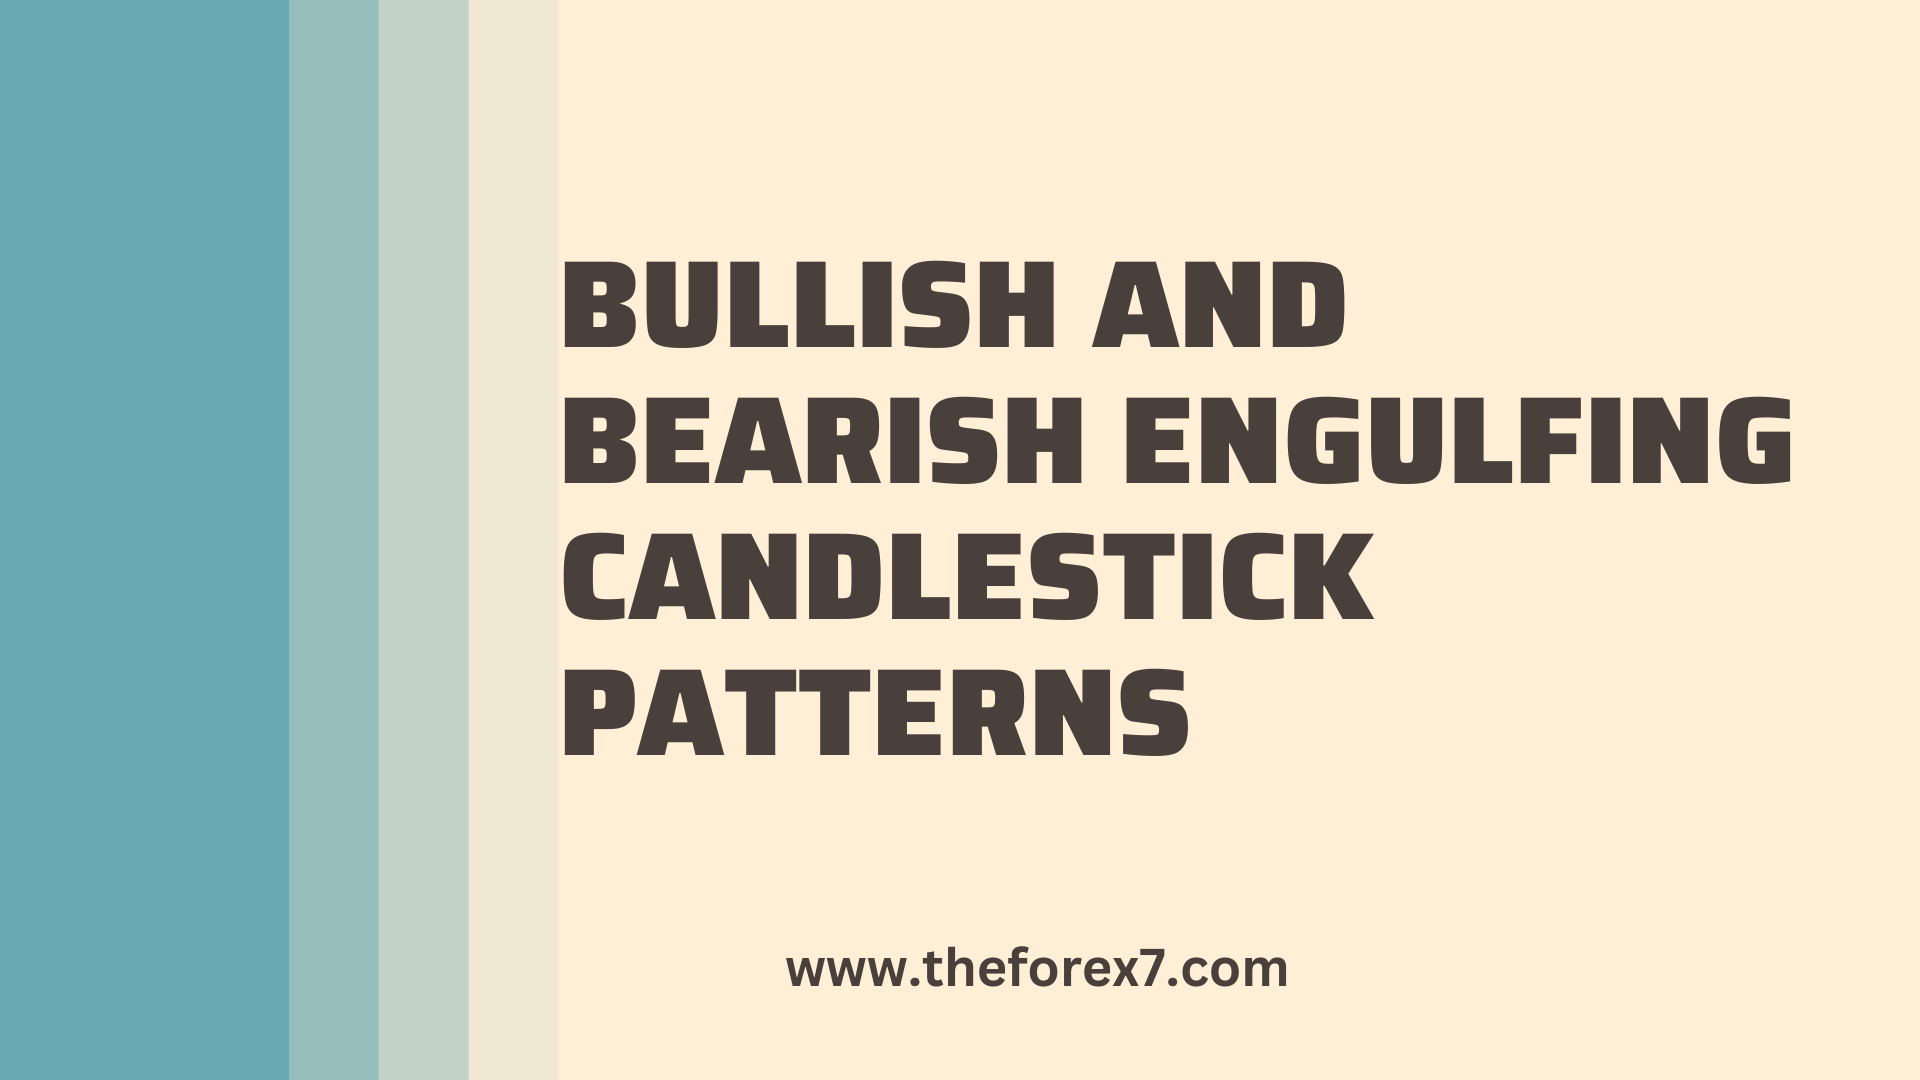 Learn about Bullish and Bearish Engulfing Candlestick Patterns